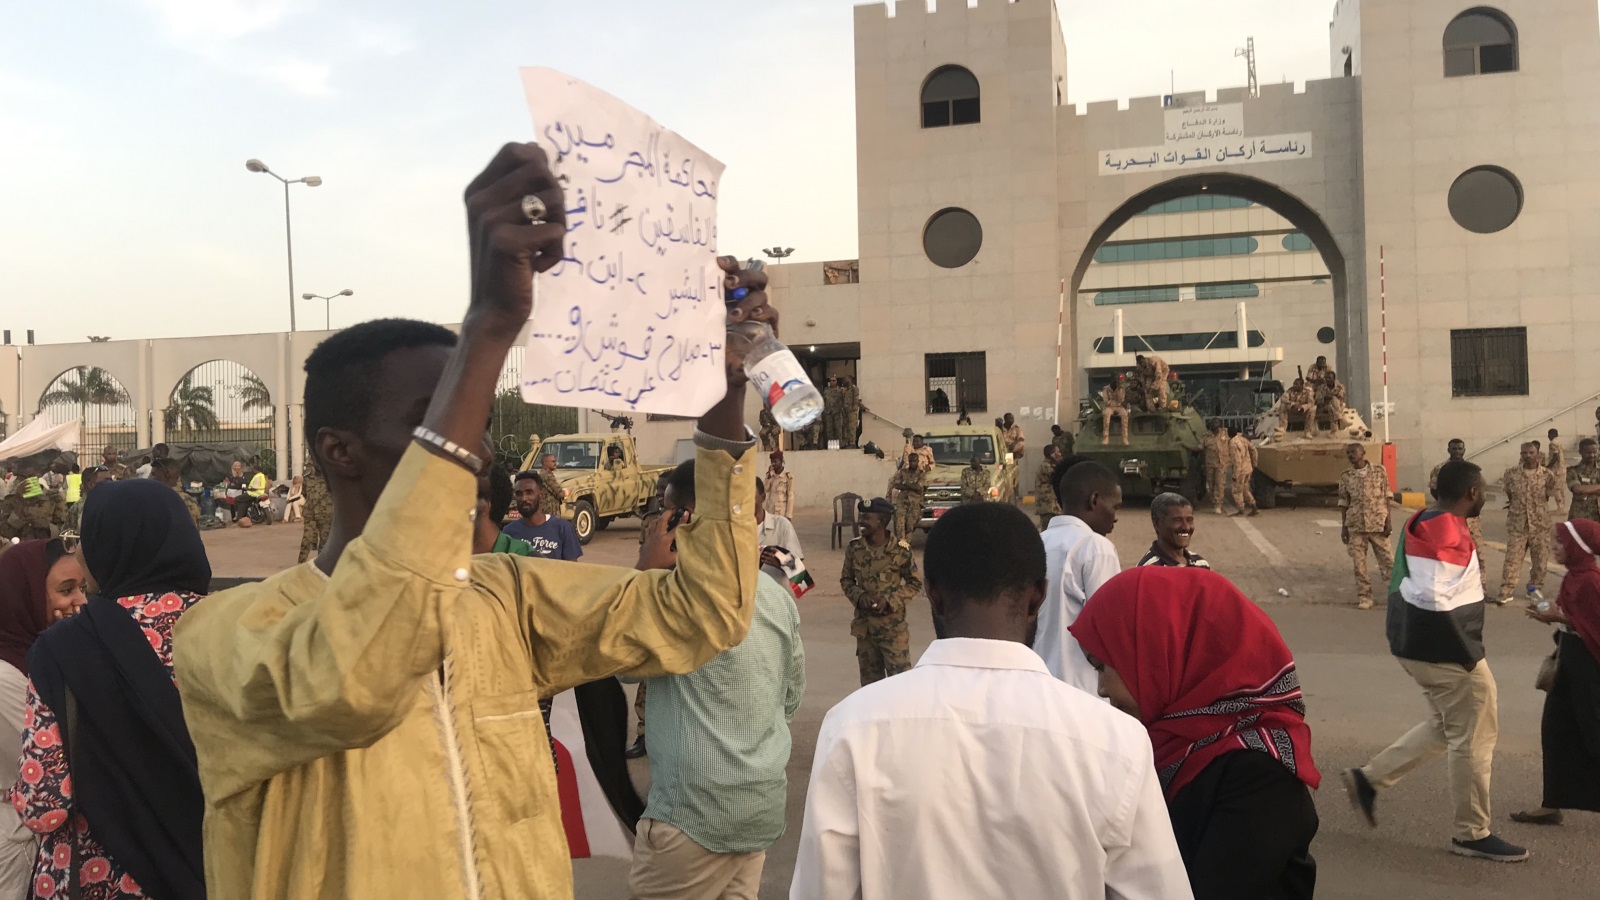 ‪محتجون أمام رئاسة أركان القوات البحرية بالخرطوم يواصلون المطالبة بتسليم السلطة للمدنيين‬ (وكالة الأناضول)